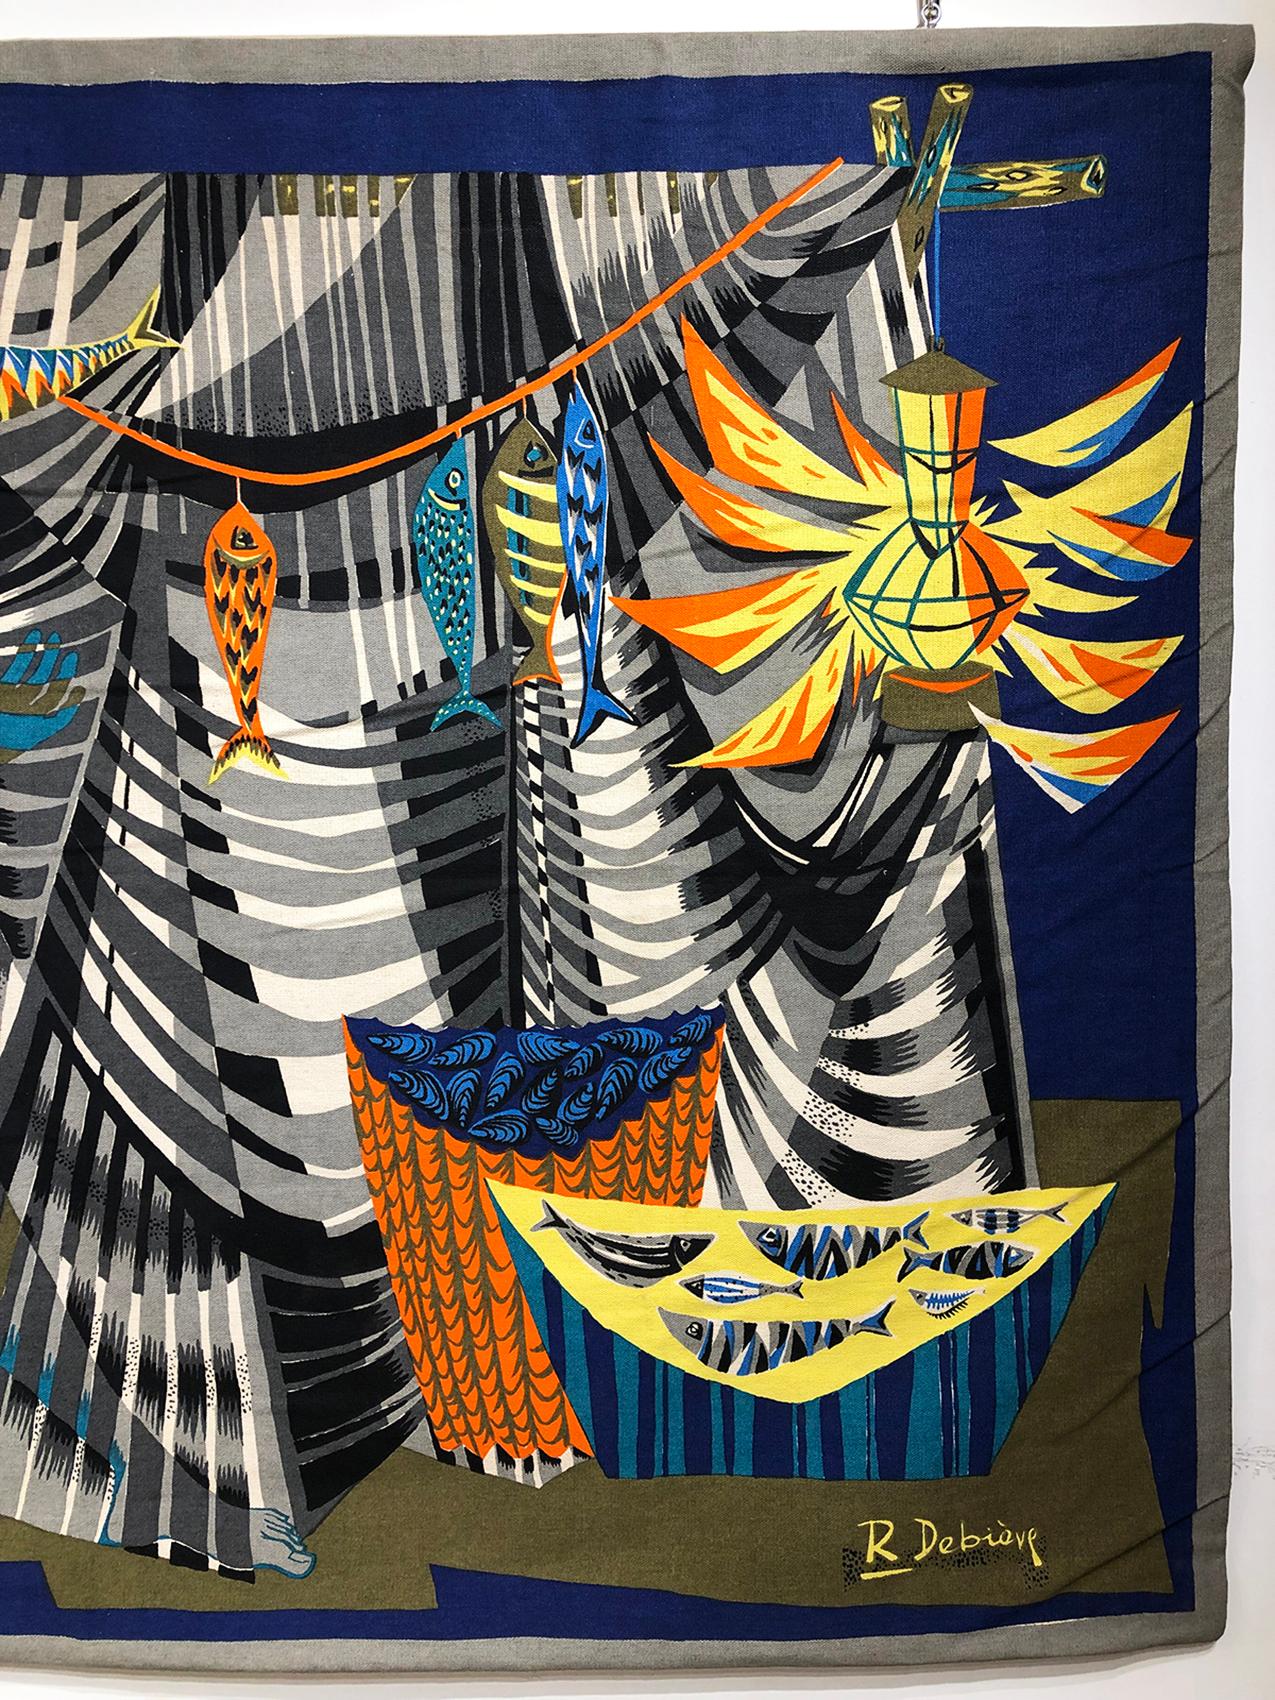 Art Deco “Les remailleur de filets” Colorful Tapestry Signed “Robert Debieve”